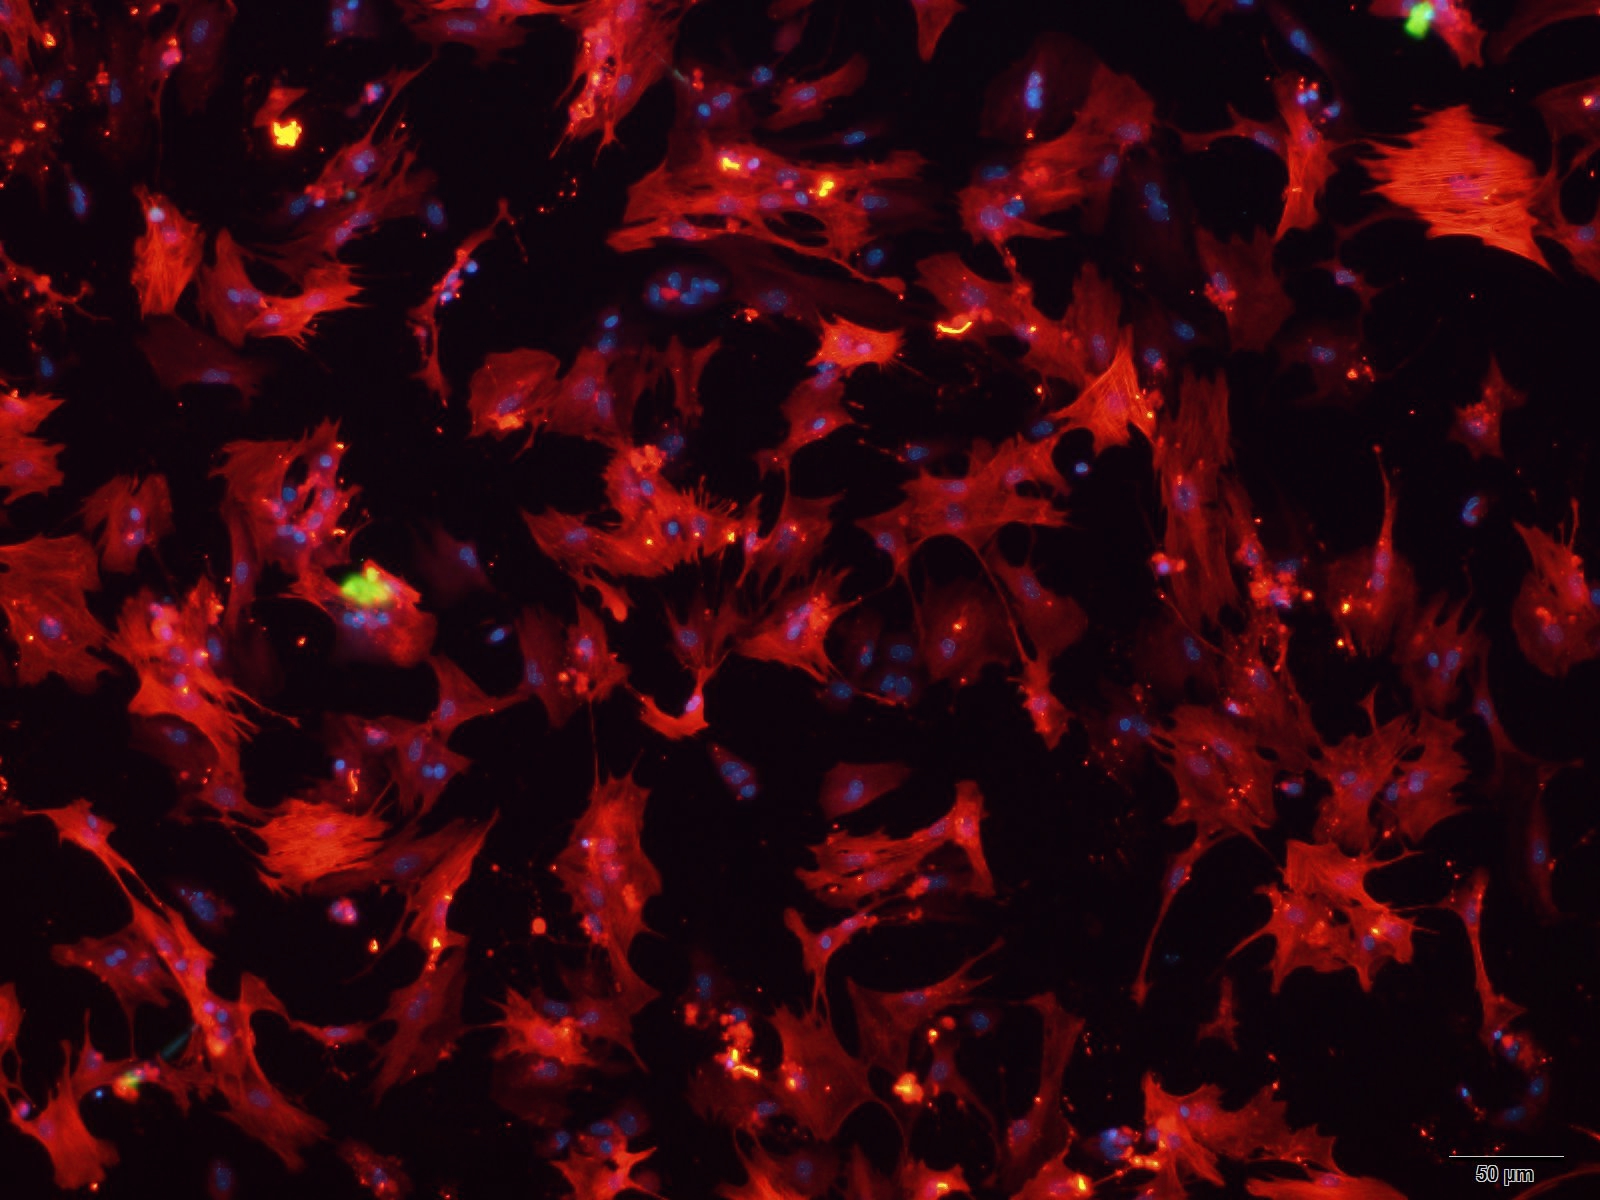 小鼠肝星状细胞